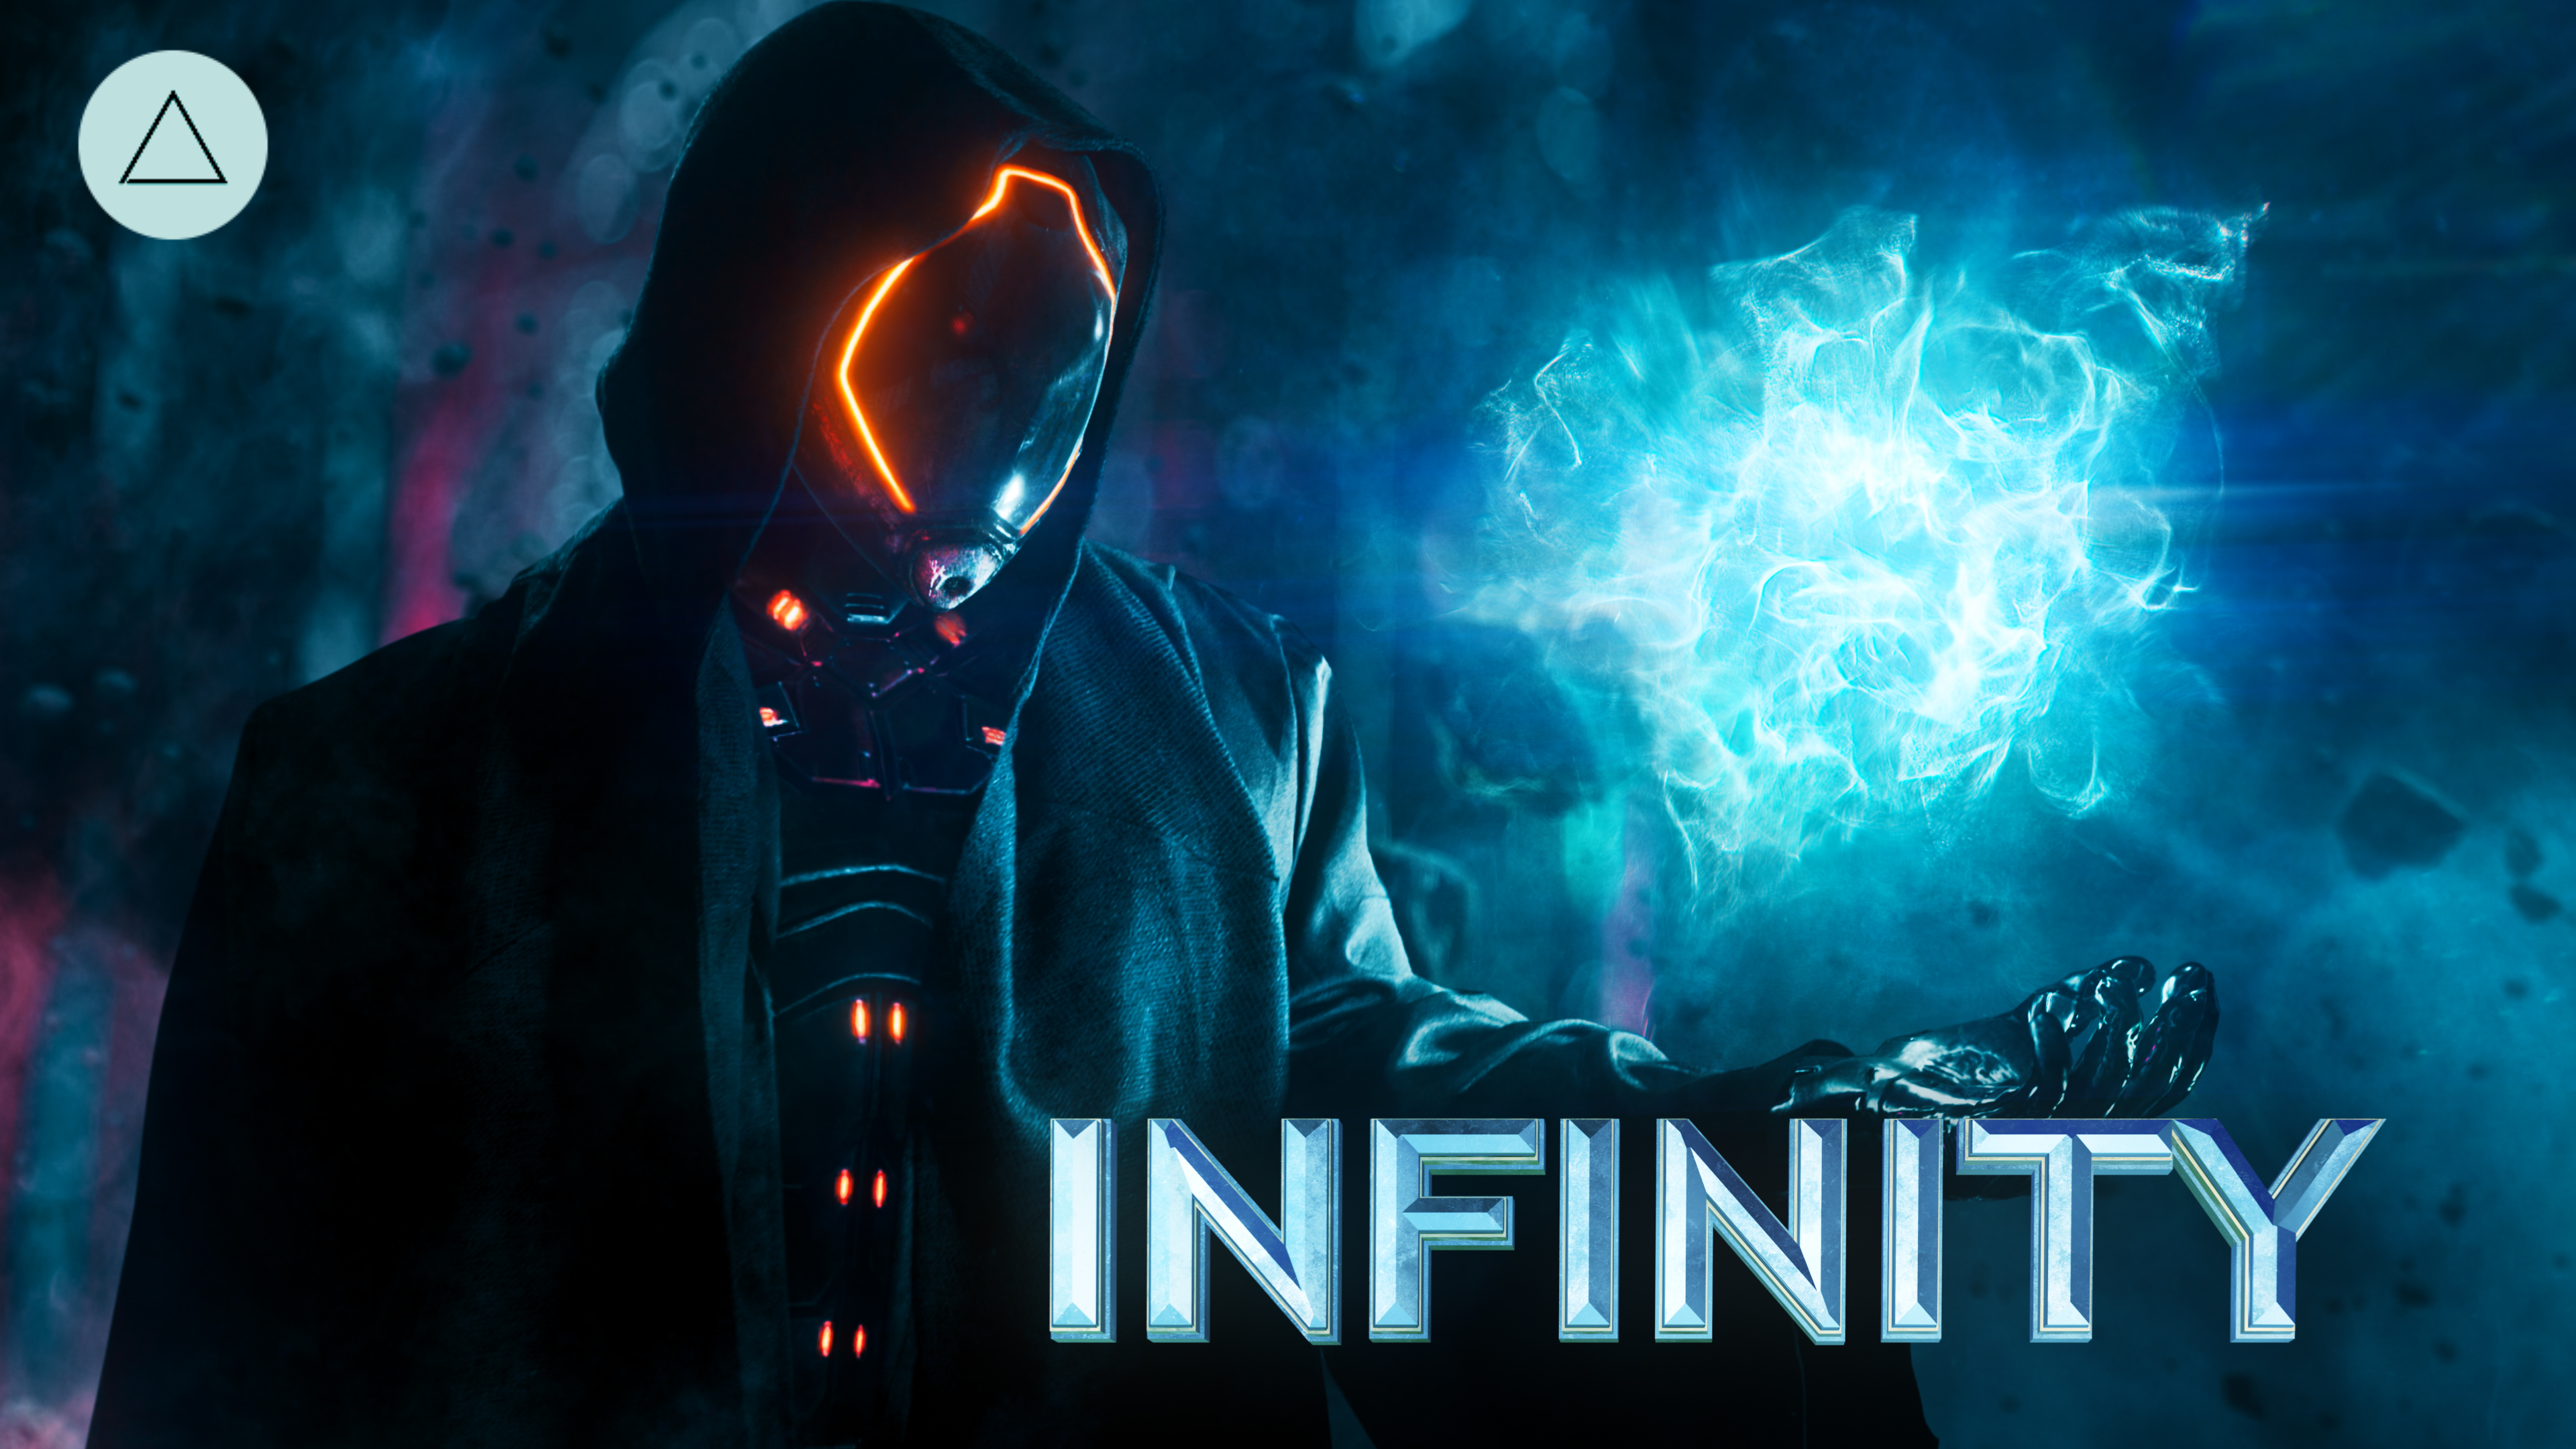 The Infinity VFX Promo